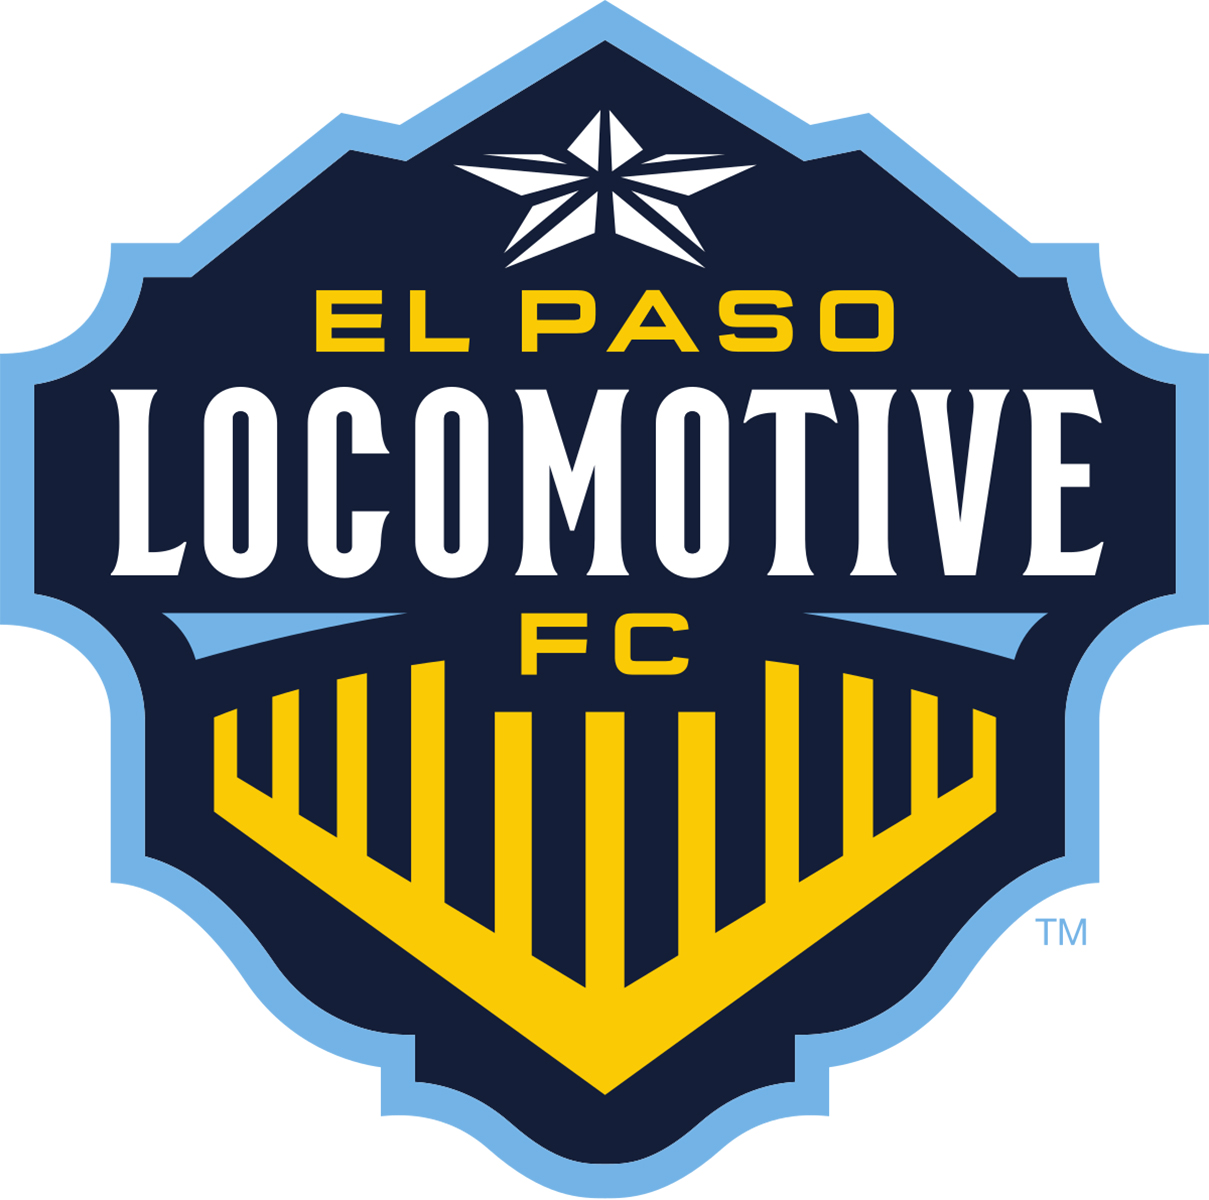 El Paso Locomotive FC vs San Diego Loyal SC - El Paso Locomotive FC